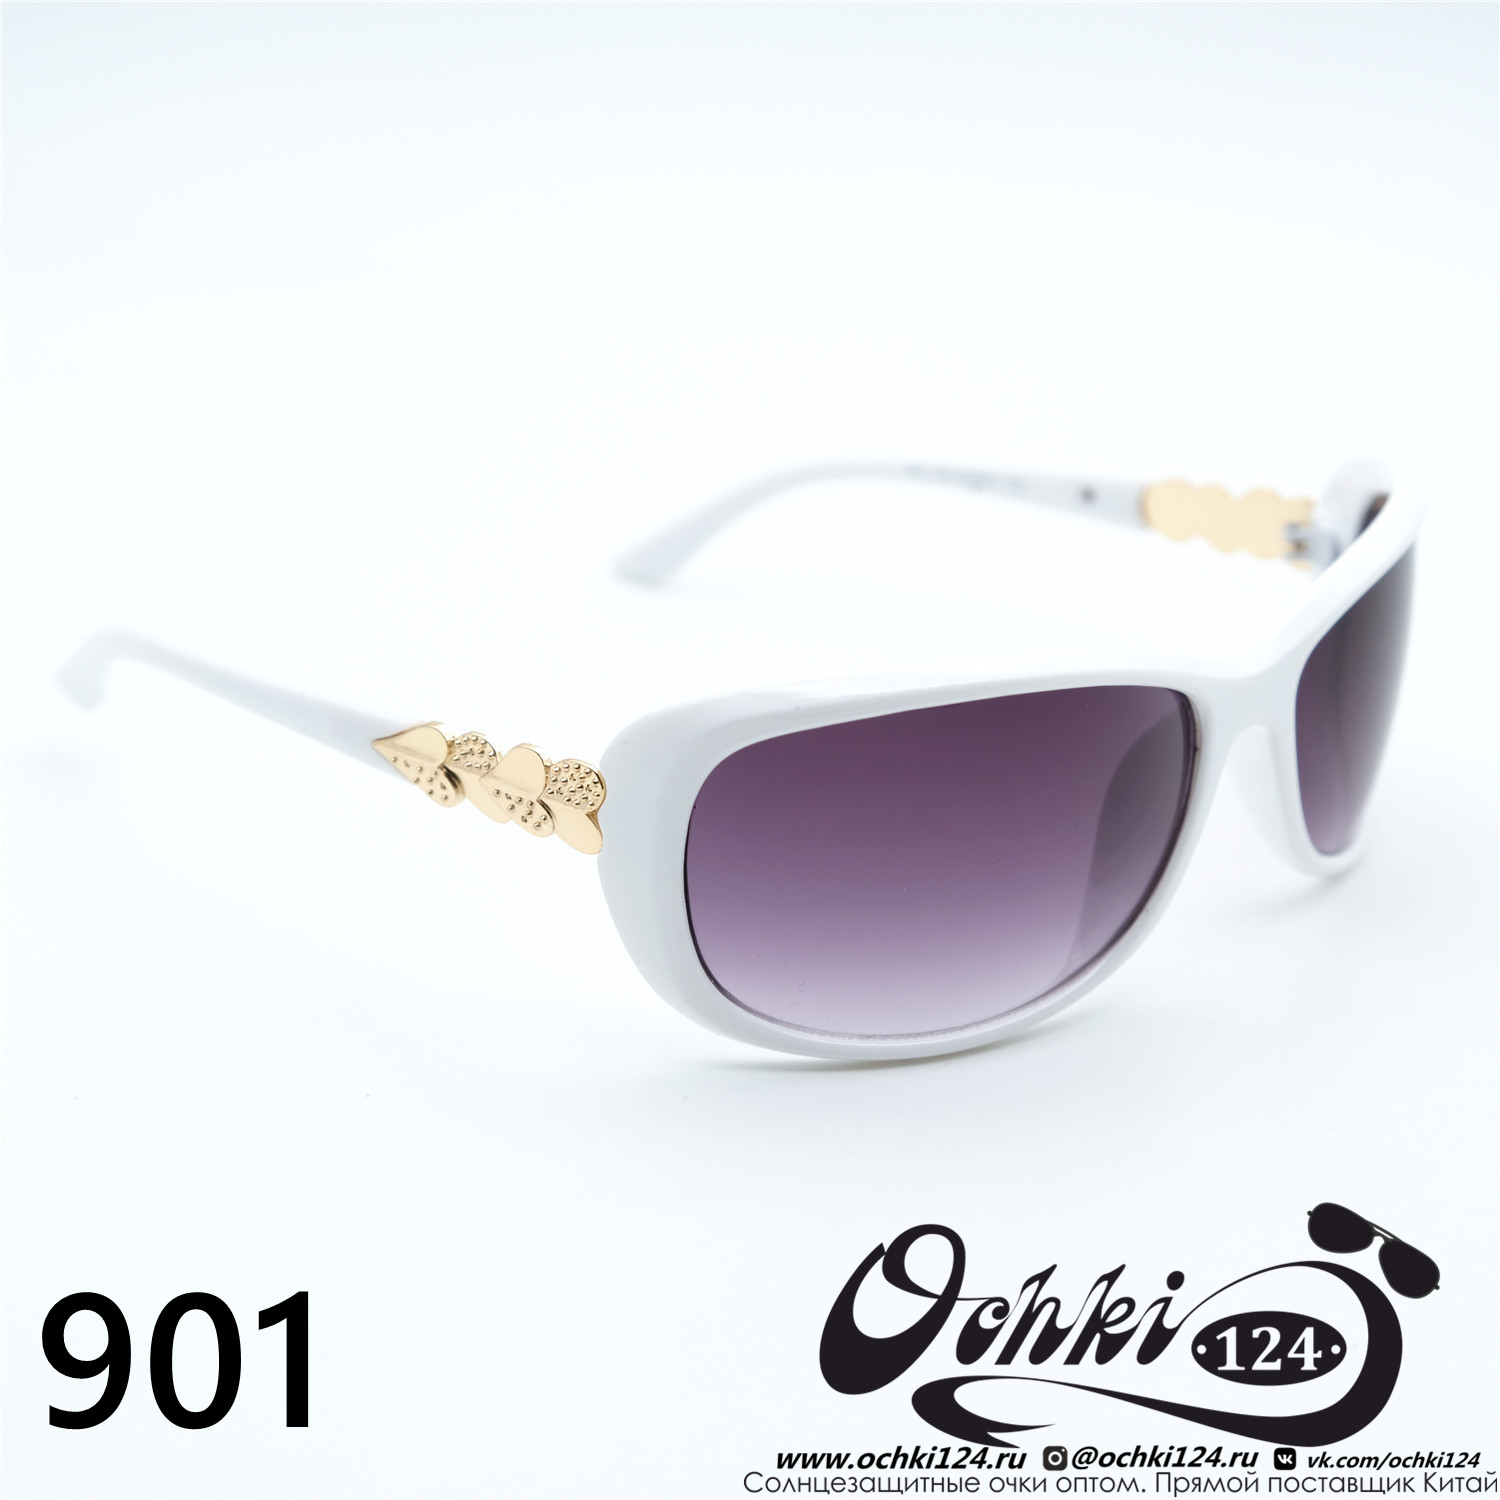  Солнцезащитные очки картинка Женские Prius  Стандартные 901-C6 